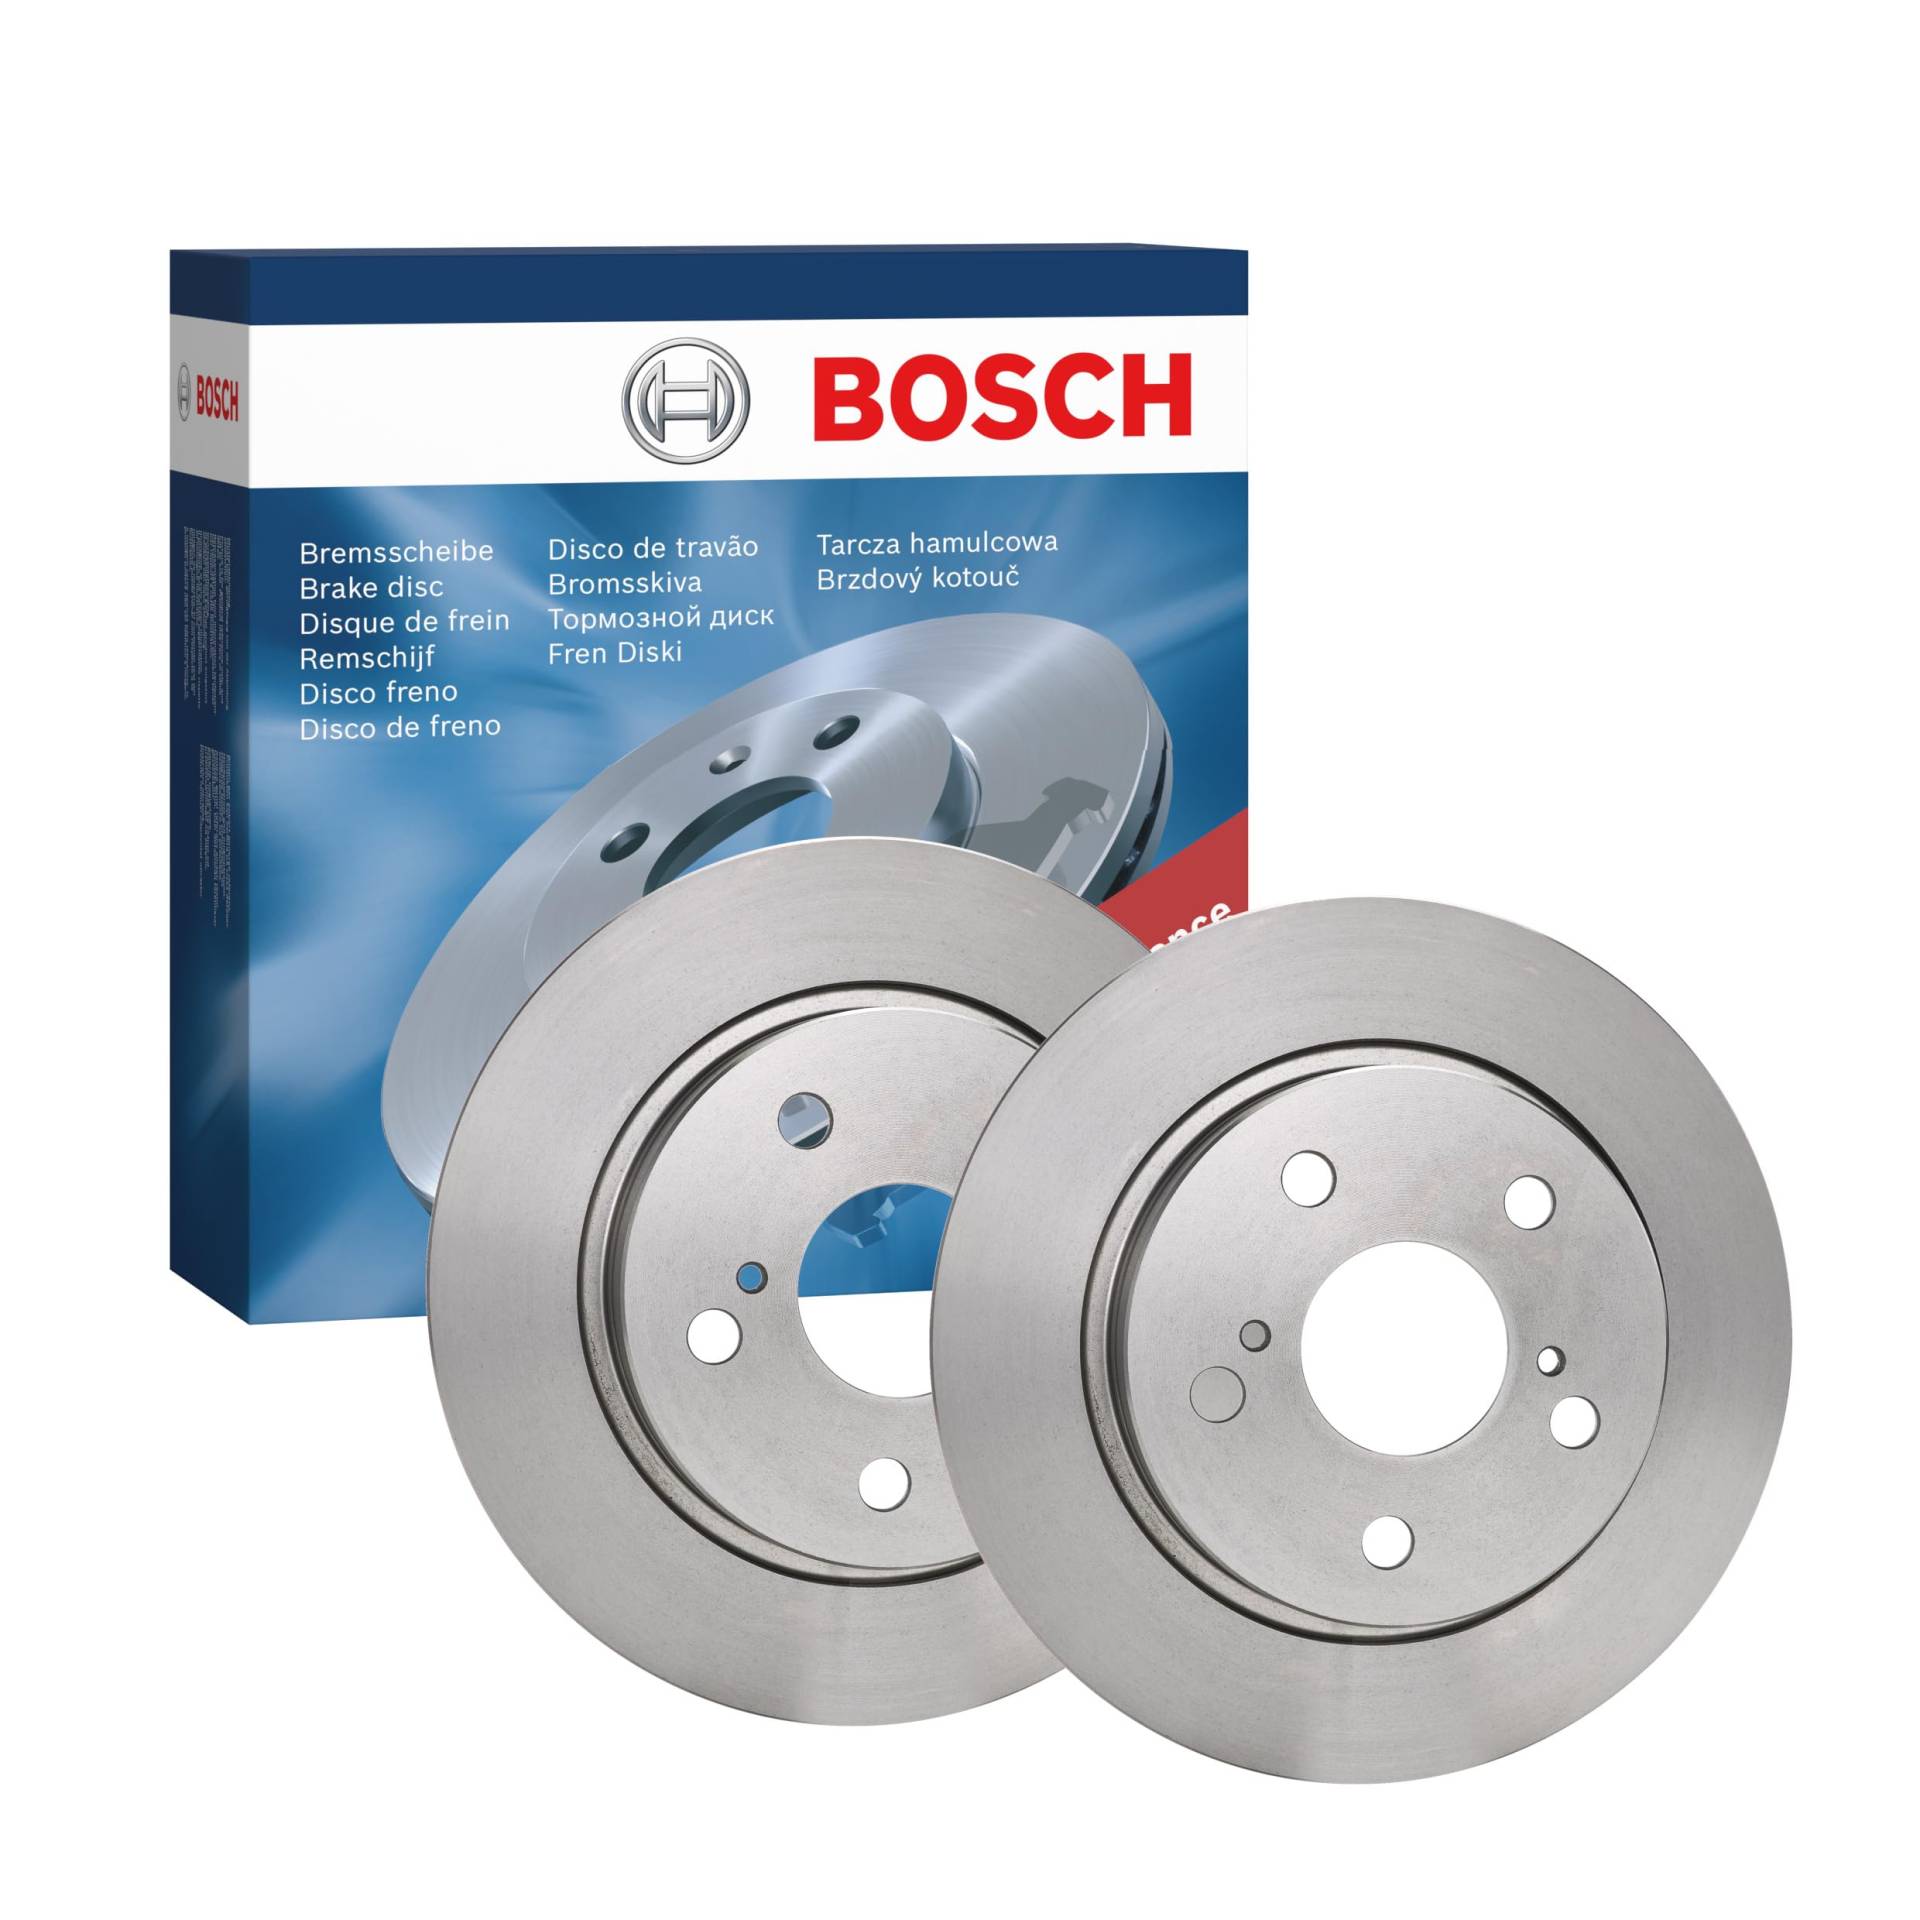 Bosch BD1373 Bremsscheiben - Hinterachse - ECE-R90 Zertifizierung - zwei Bremsscheiben pro Set von Bosch Automotive